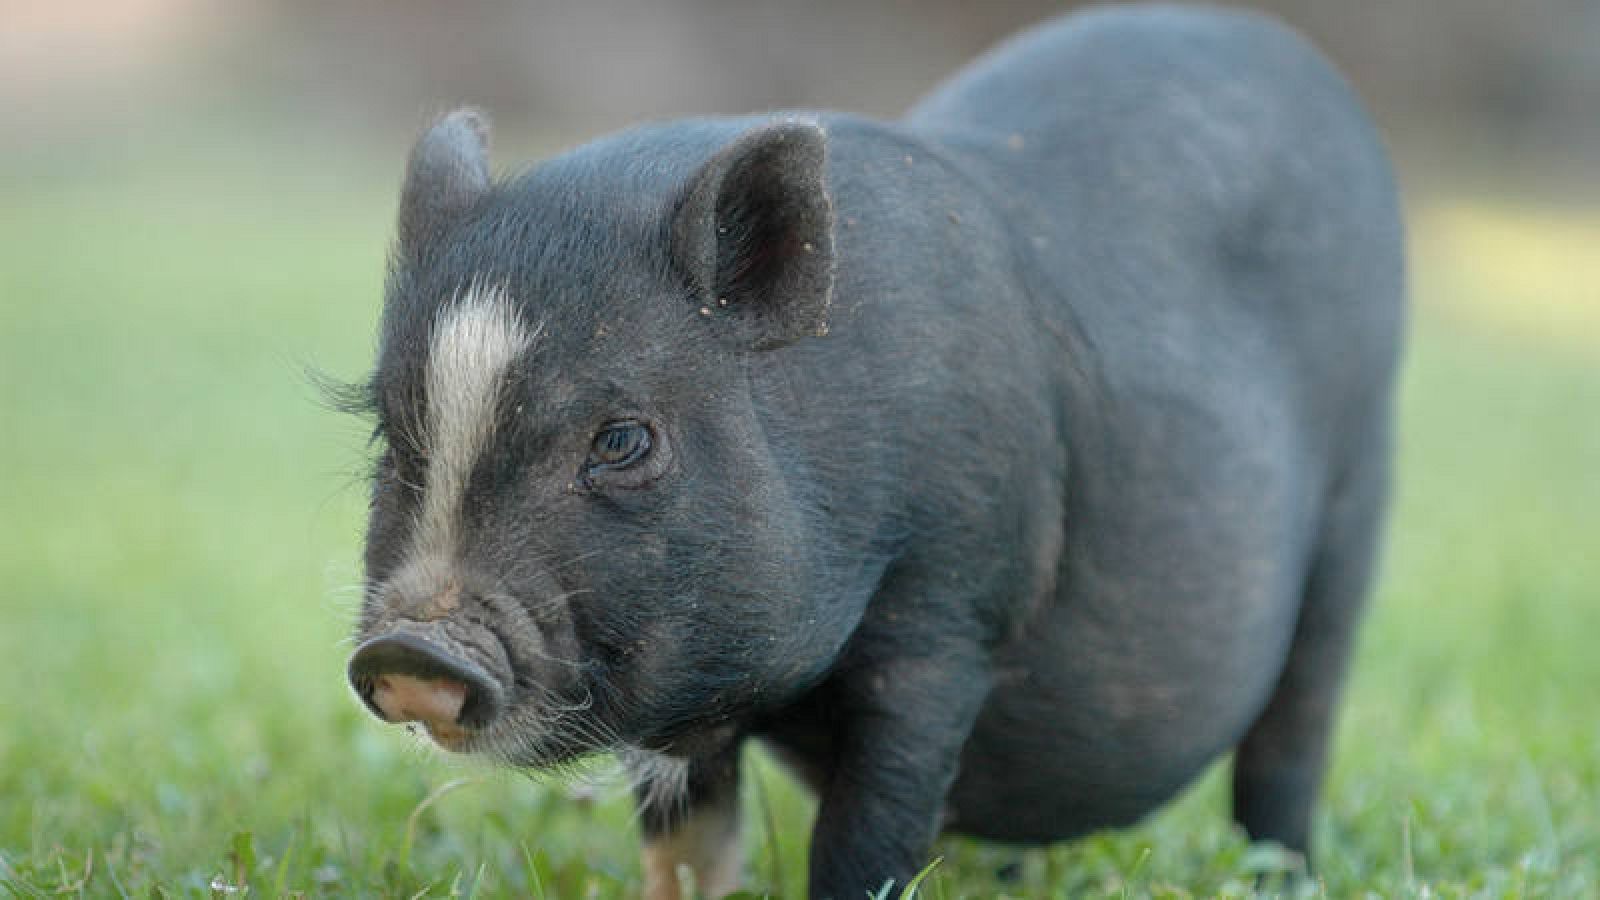  El cerdo vitnamita, la pitón real y la tortuga de Florida son catalogadas como especies invasoras